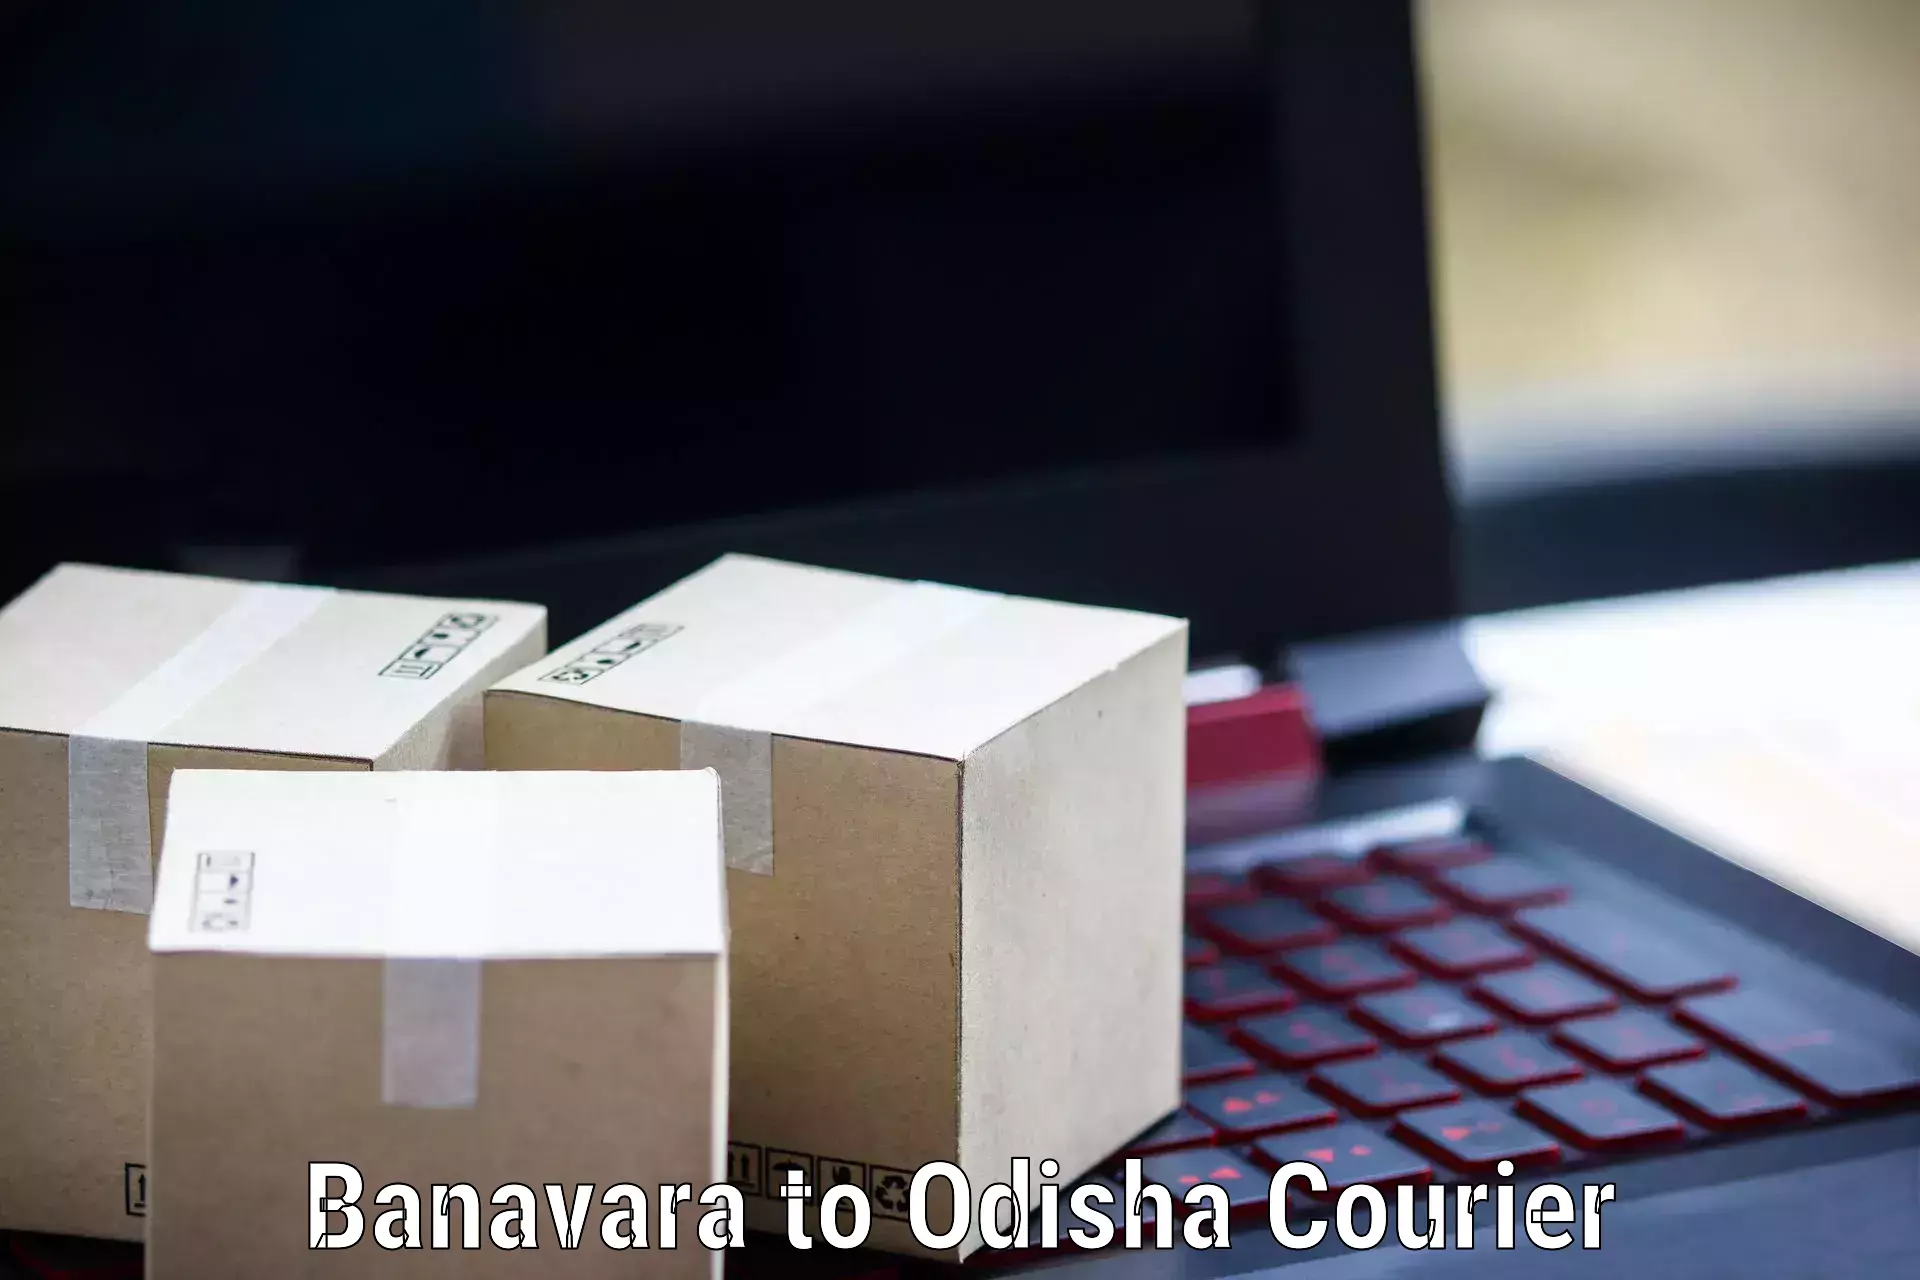 Premium courier solutions Banavara to Nabarangpur